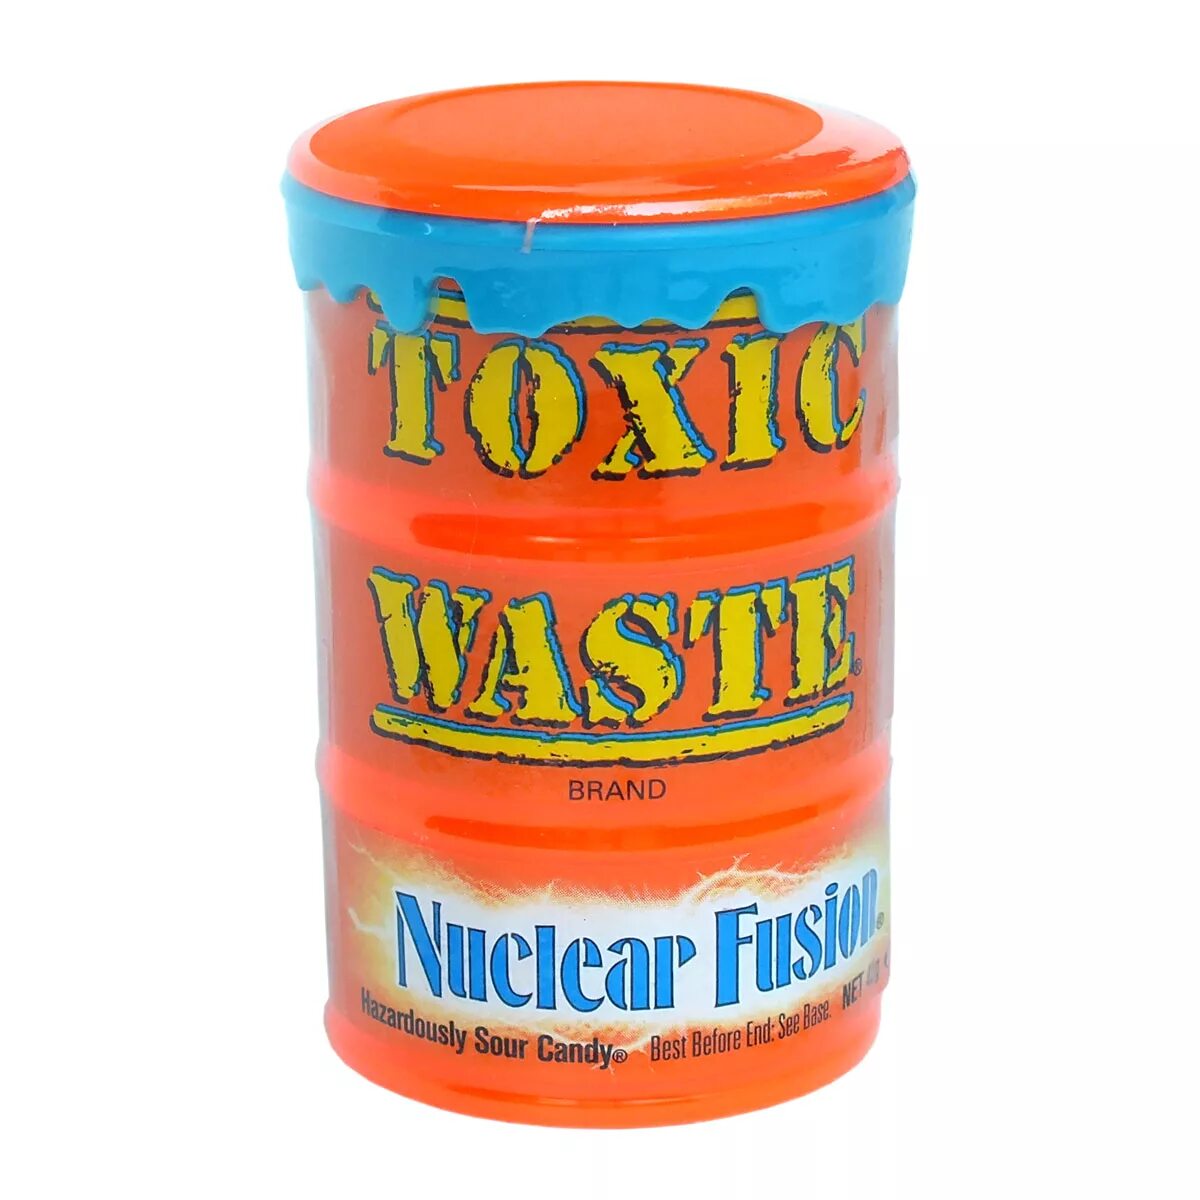 Самые кислые конфеты в мире Toxic waste. Toxic waste nuclear Fusion. Кислые конфеты Токсик. Леденцы Toxic waste. Токсик купить